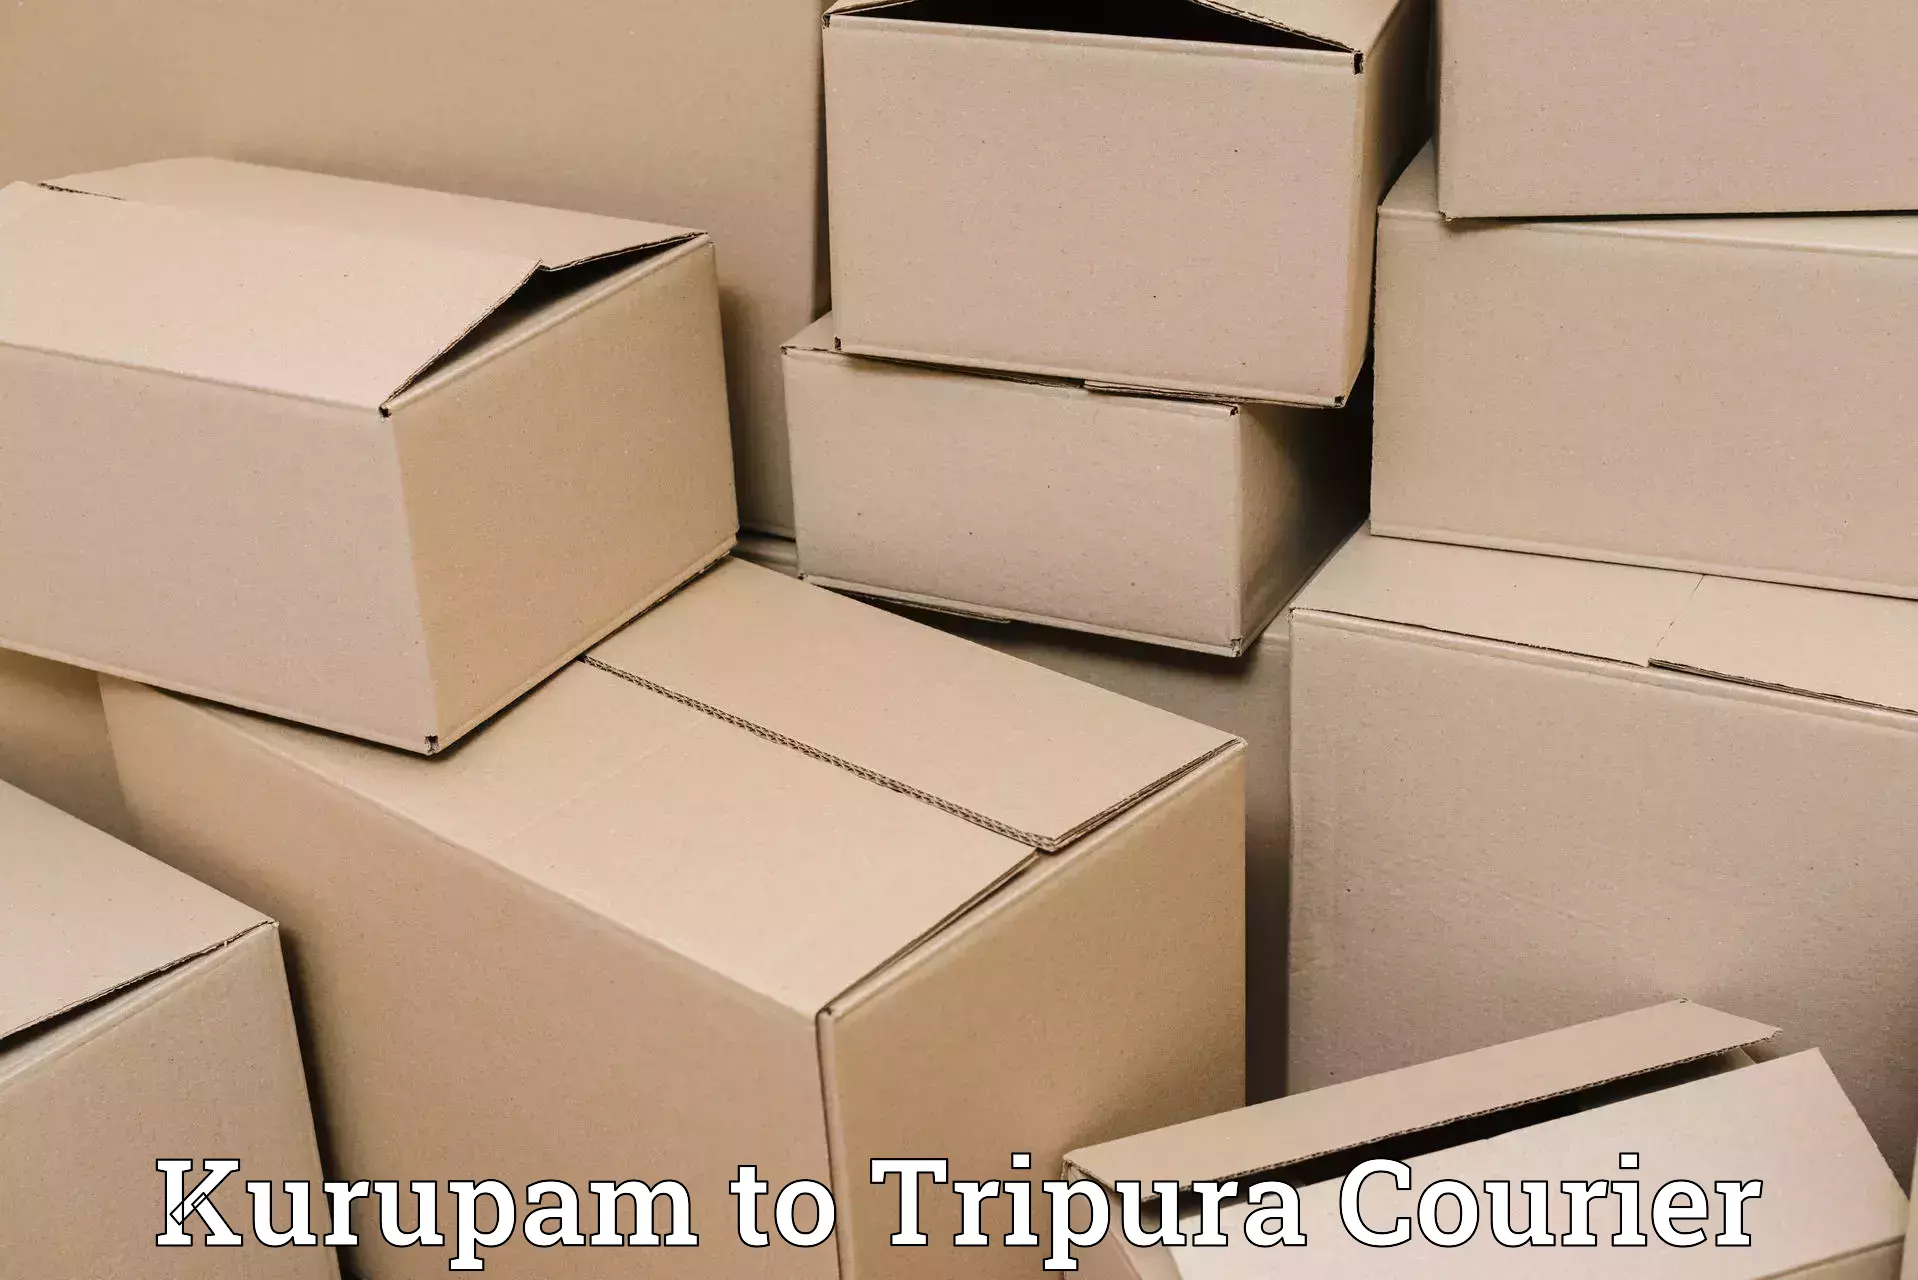 Same-day delivery options Kurupam to IIIT Agartala